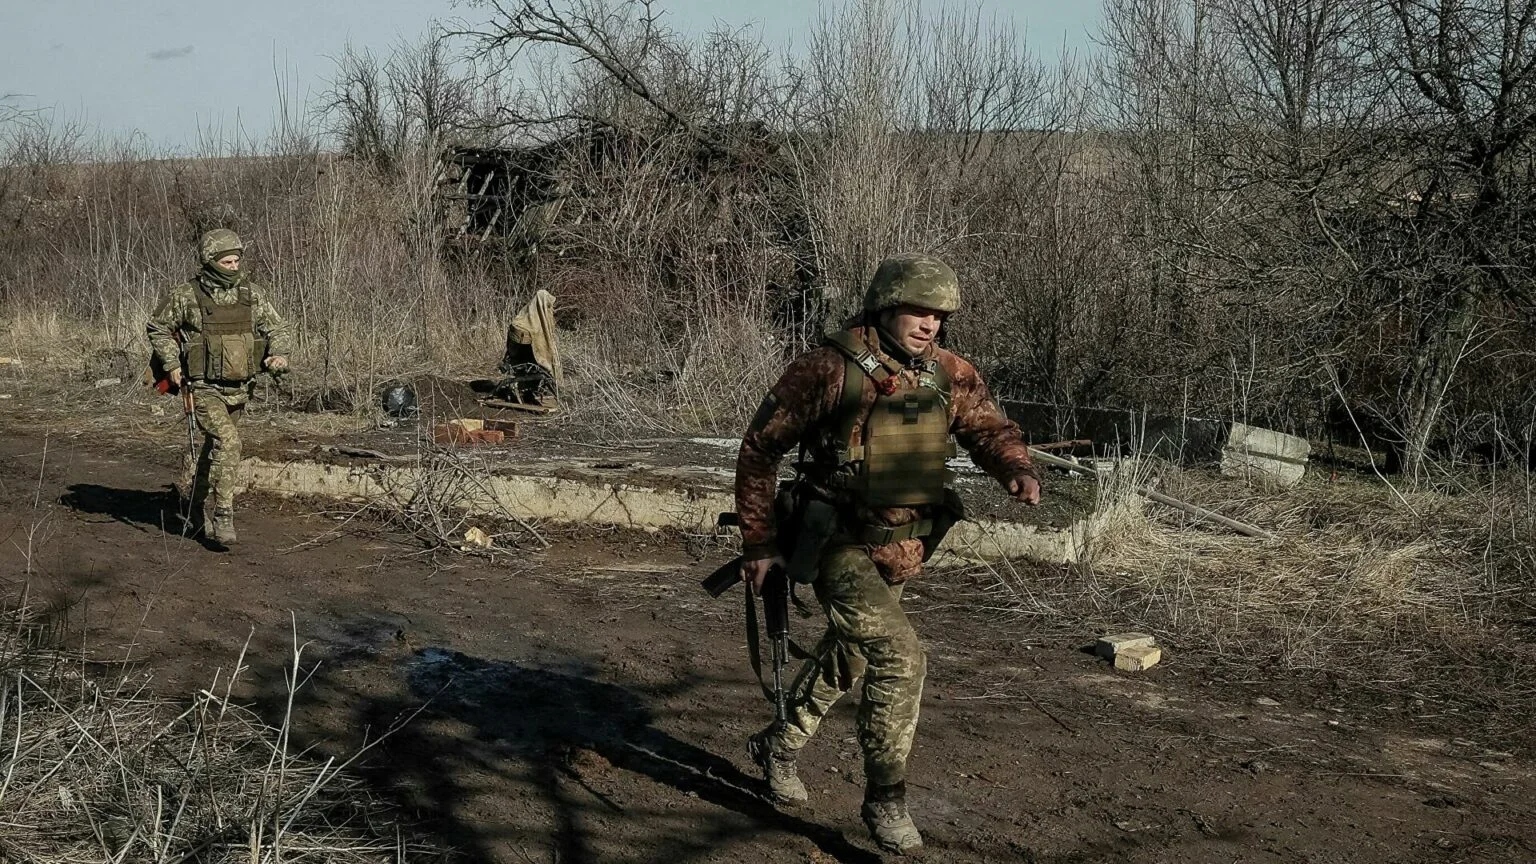 Պատերազմ Ուկրաինայում․ Ռուսաստանը հարվածներ է հասցնում Կիևին, Խարկովին և այլ քաղաքներին